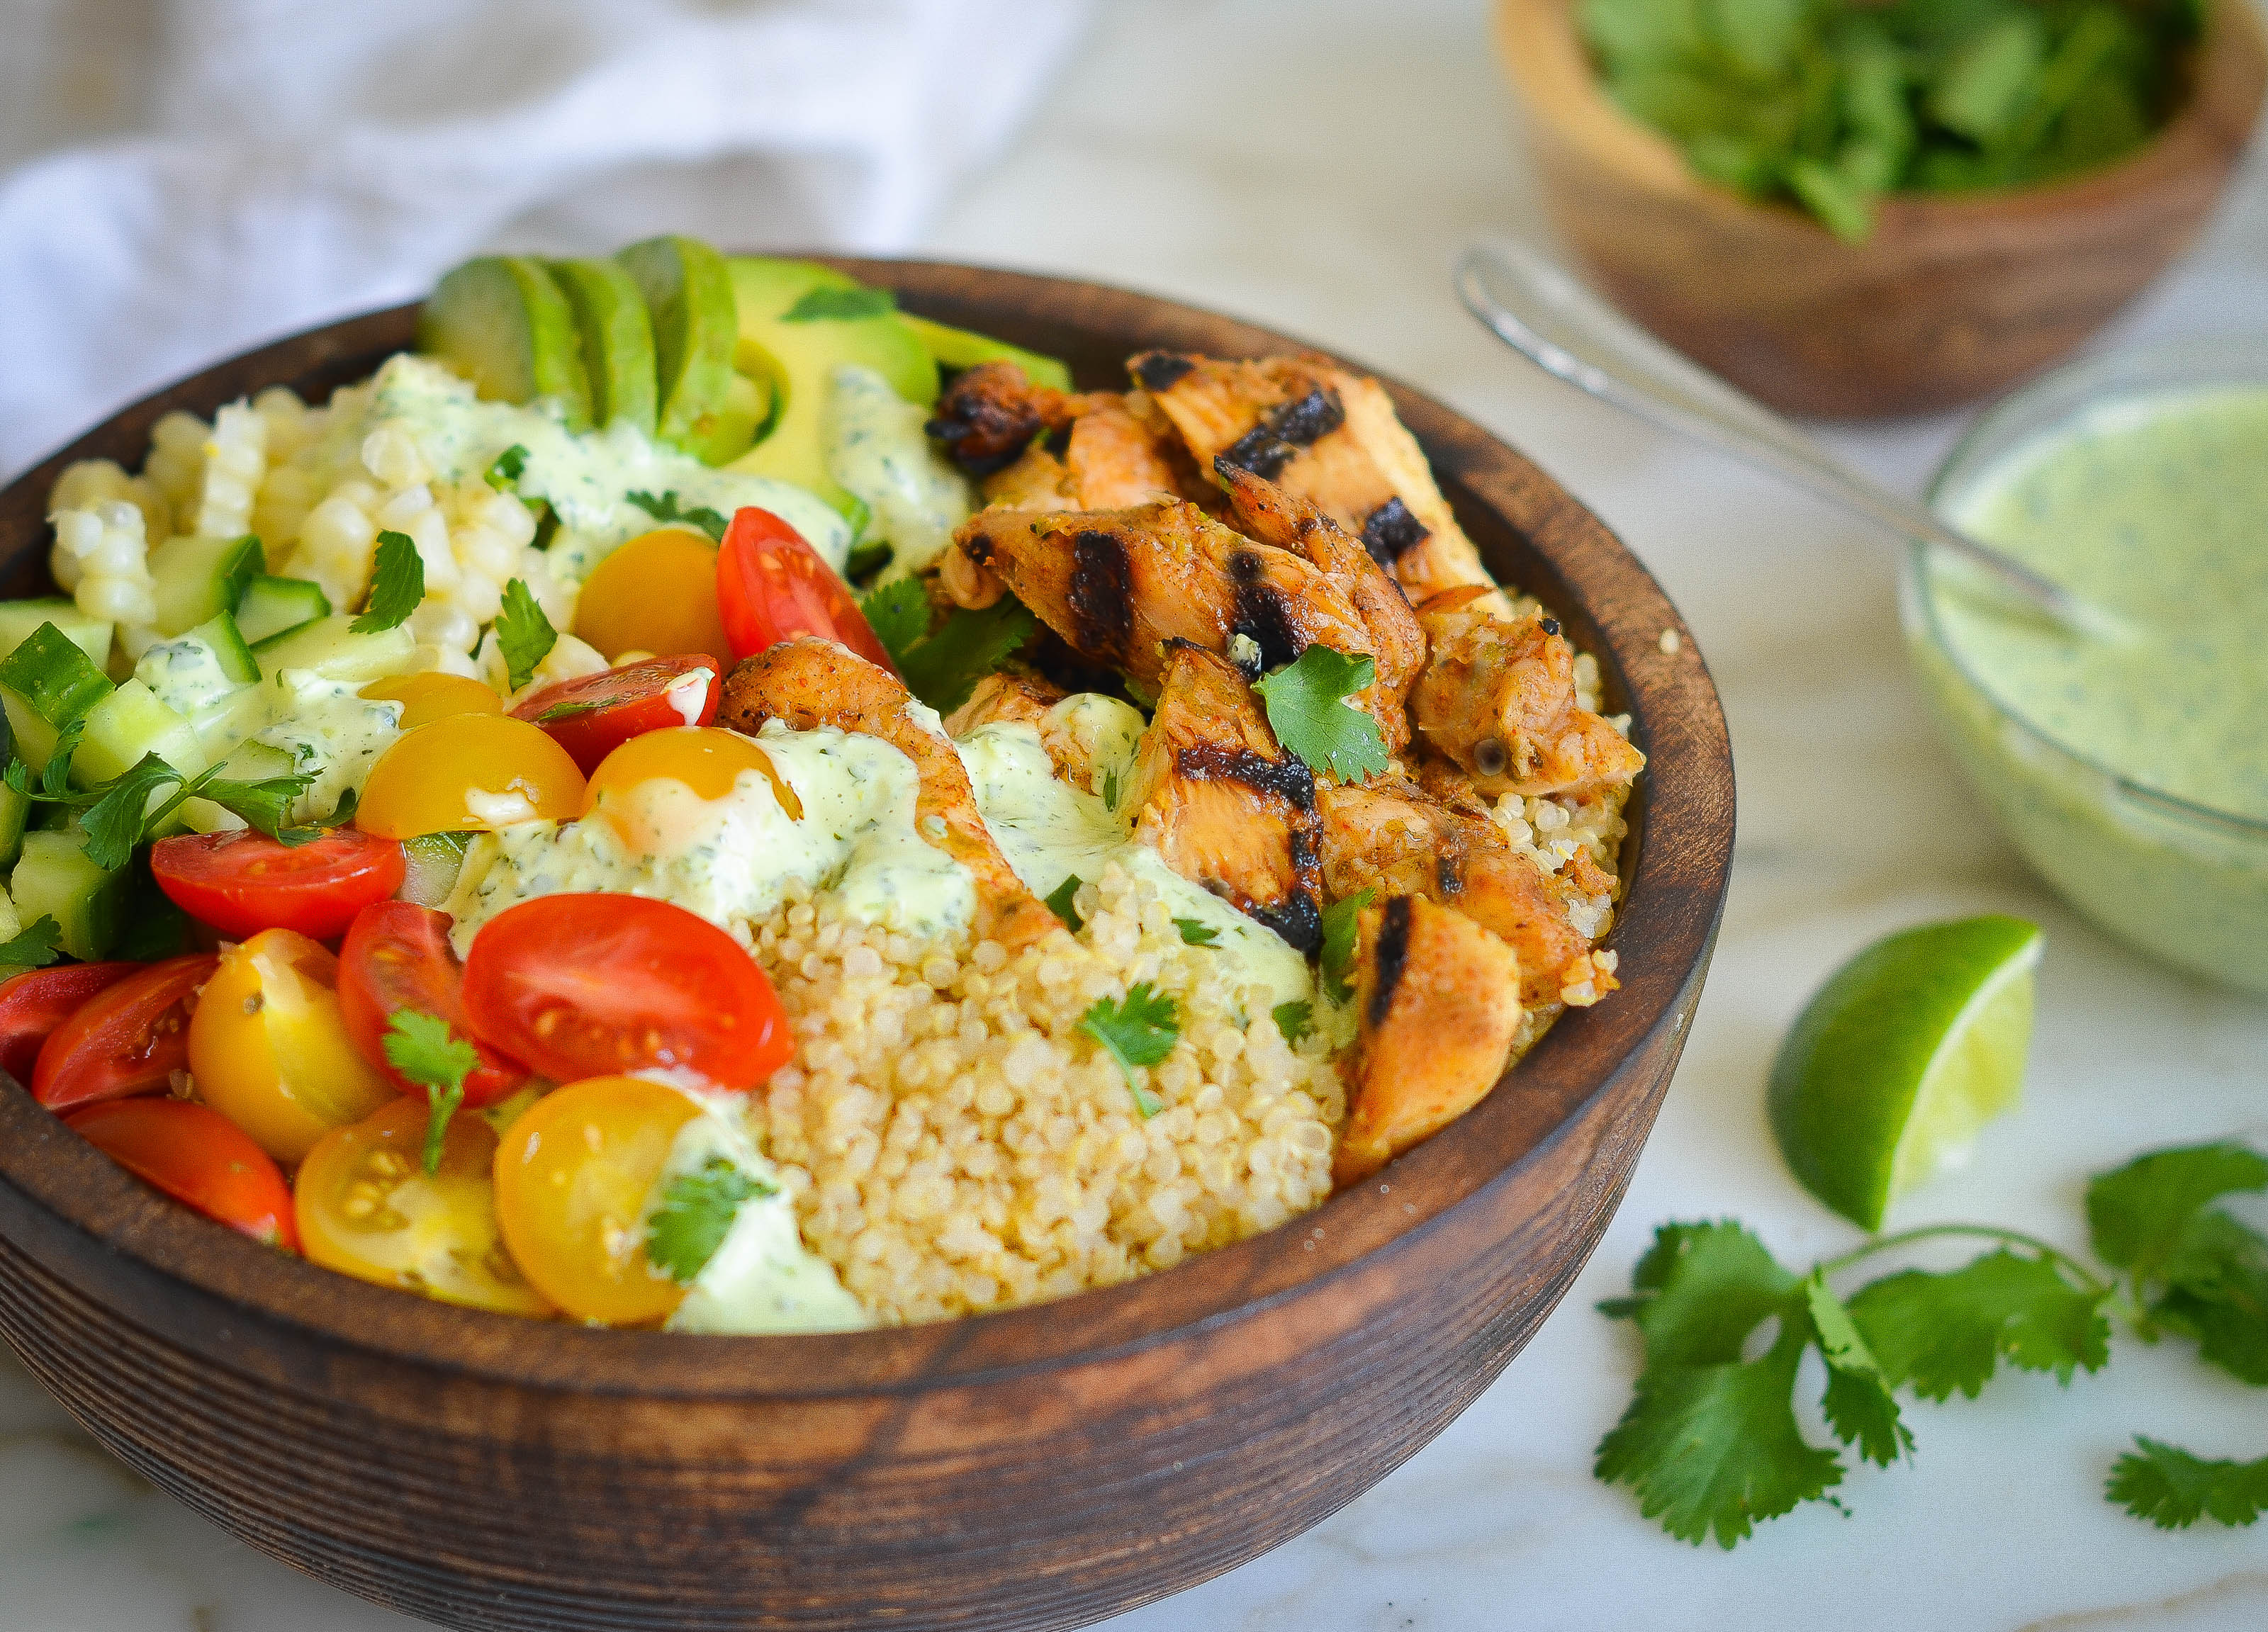 Cajun Chicken Rice Bowls with Avocado Salad